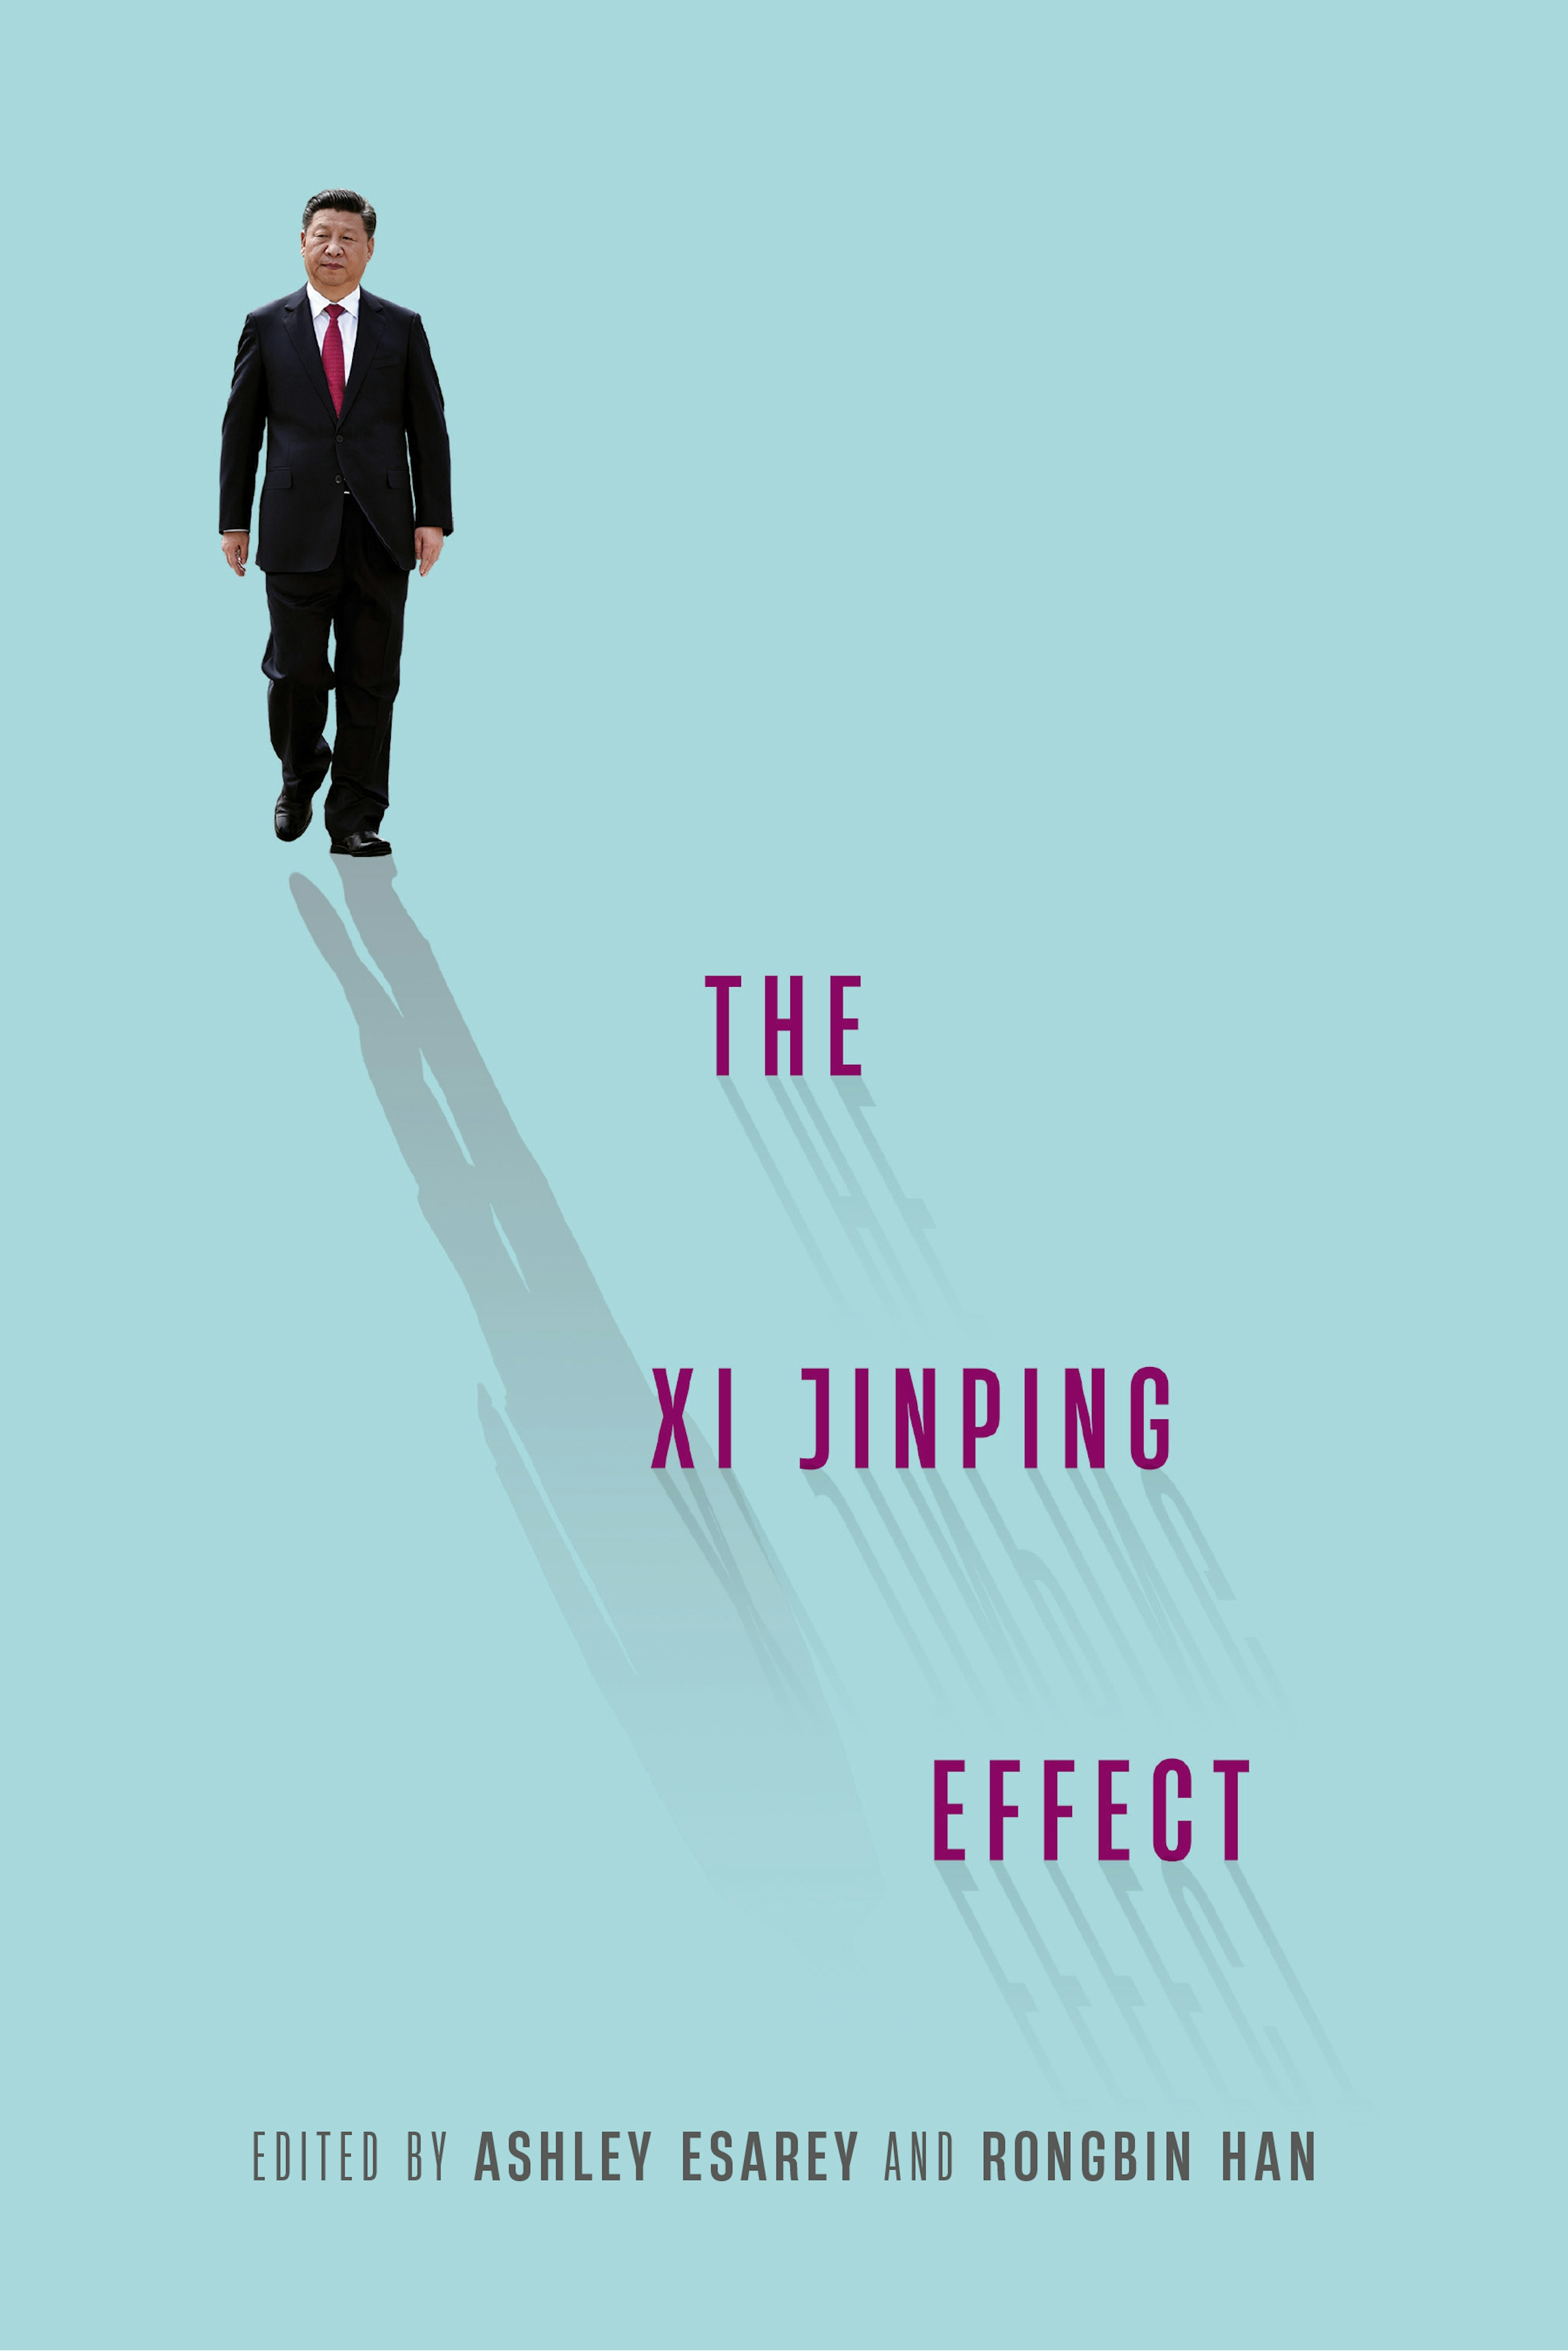 The Xi Jinping Effect